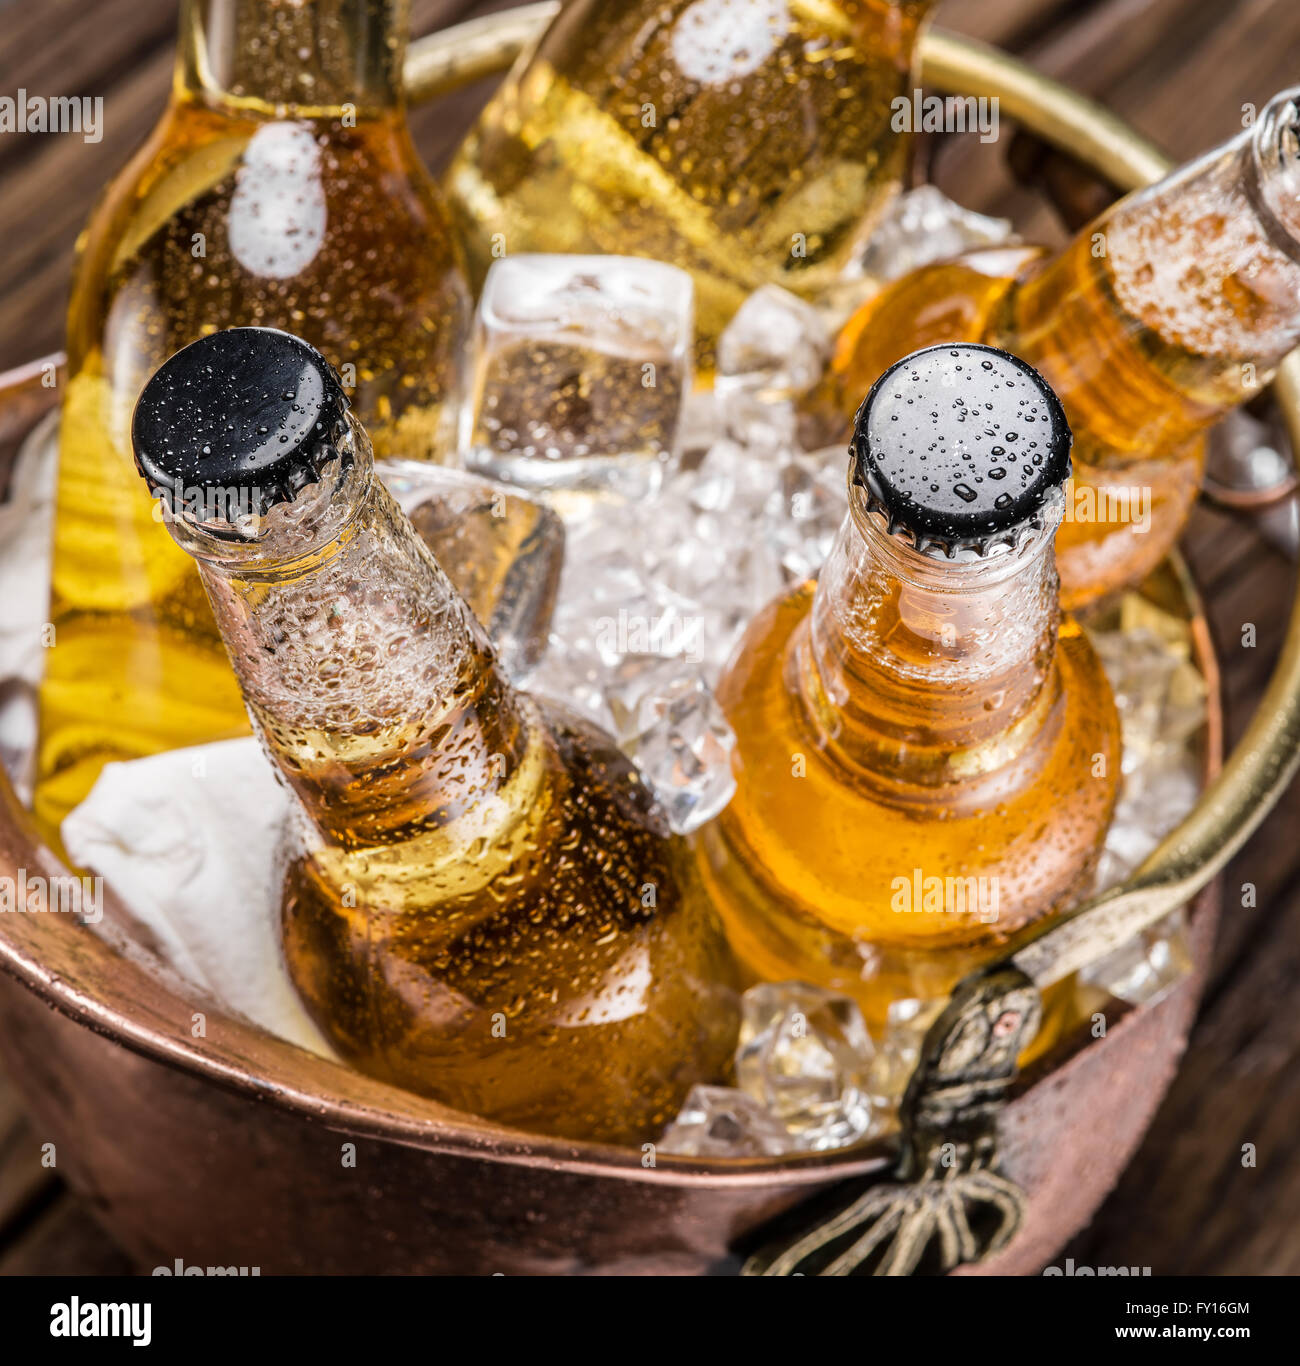 Kalte Flaschen Bier in den ehernen Eimer auf dem Holztisch. Stockfoto